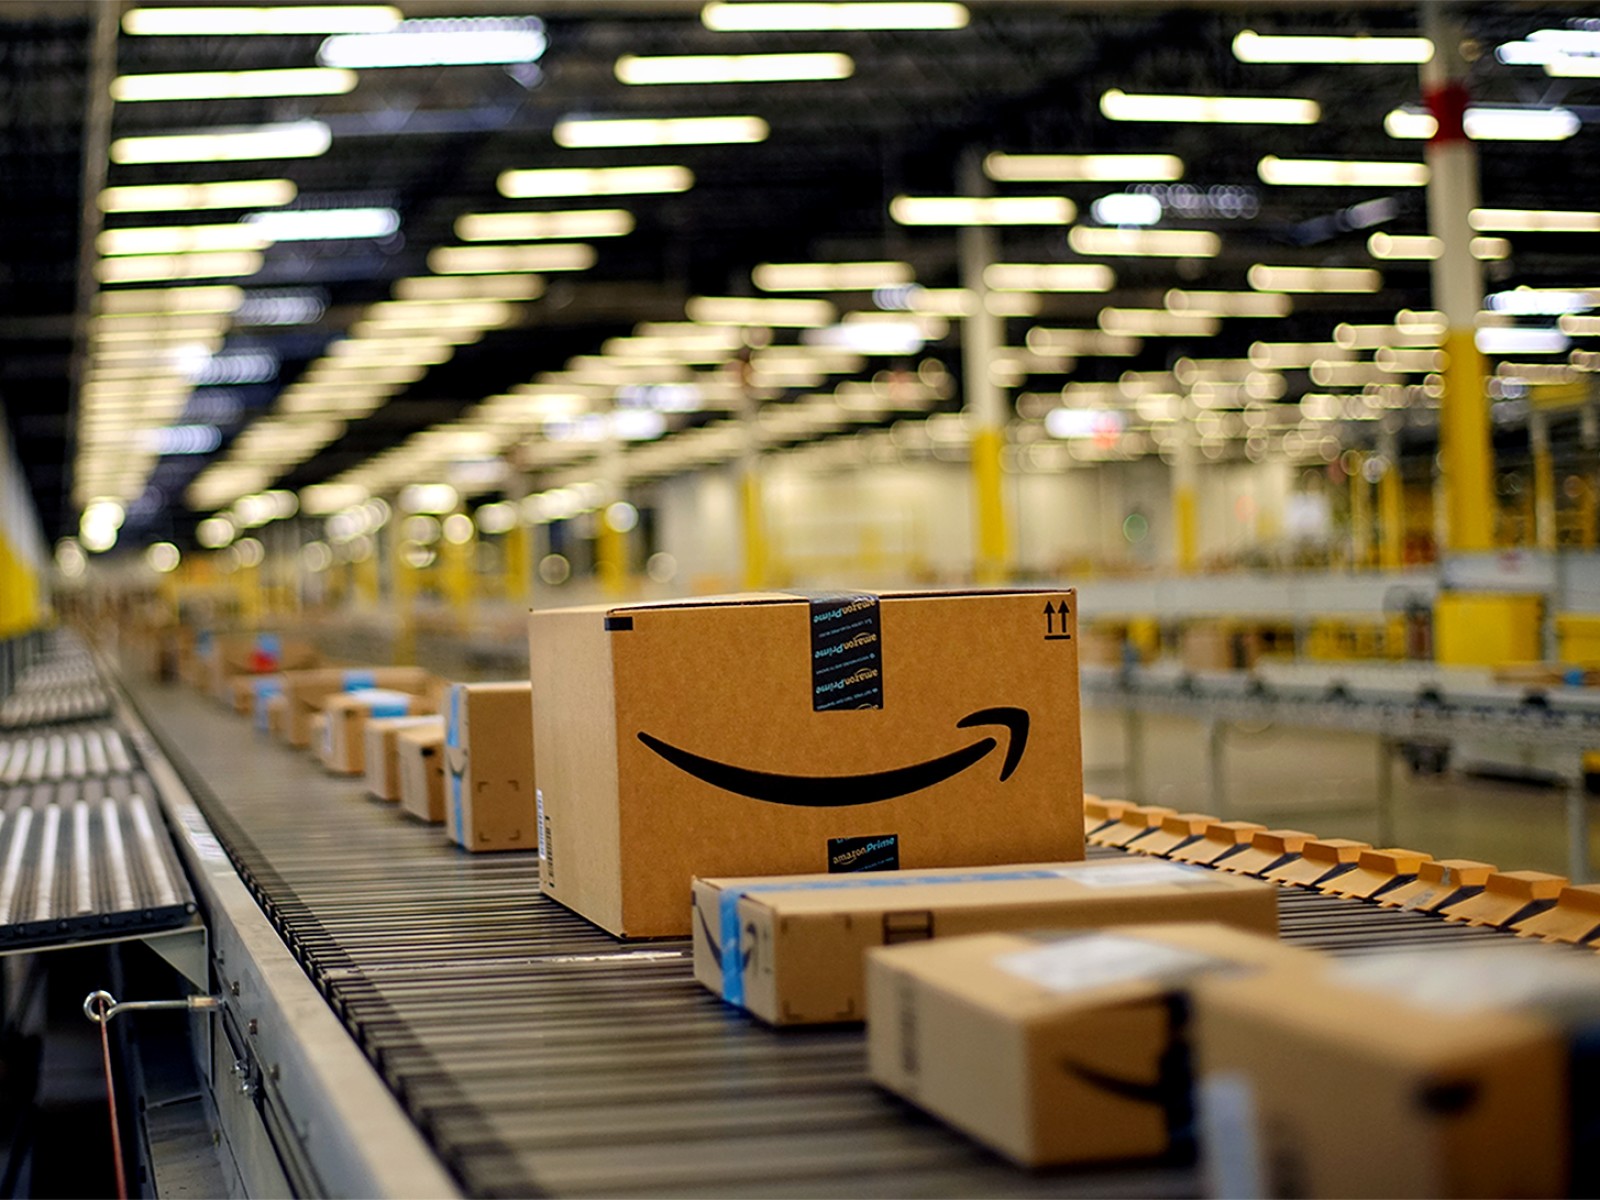 ¿Buscas empleo? Amazon contratará 100.000 trabajadores más para temporada decembrina